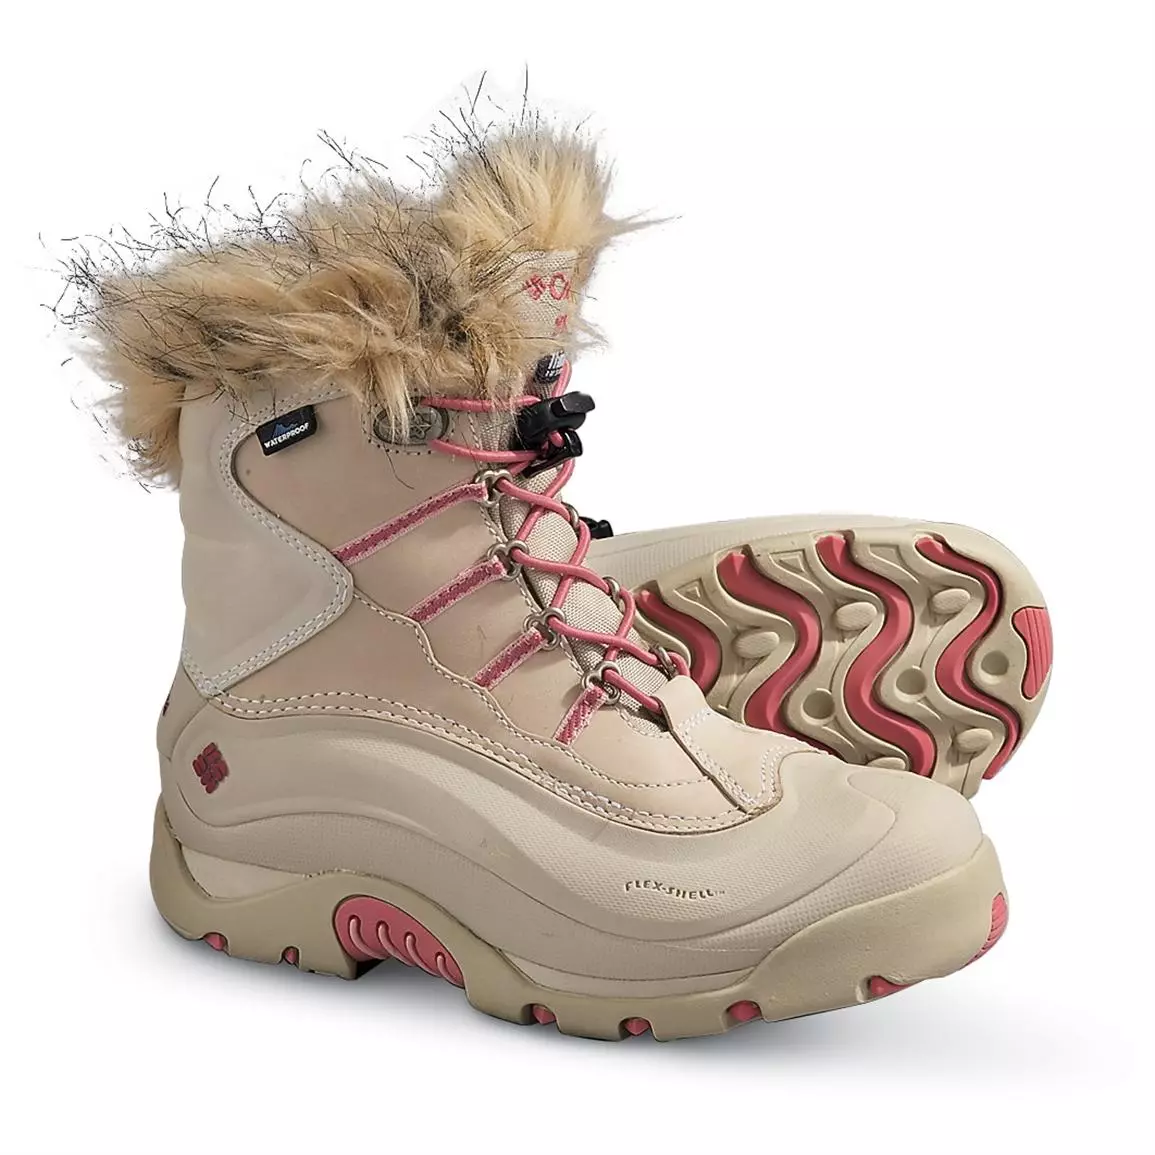 Kombia Boots (64 billeder): Kvinders Vinter- og Isolerede Børne Modeller til Girls Bugaboot og Minx, Columbia Anmeldelser 2268_49